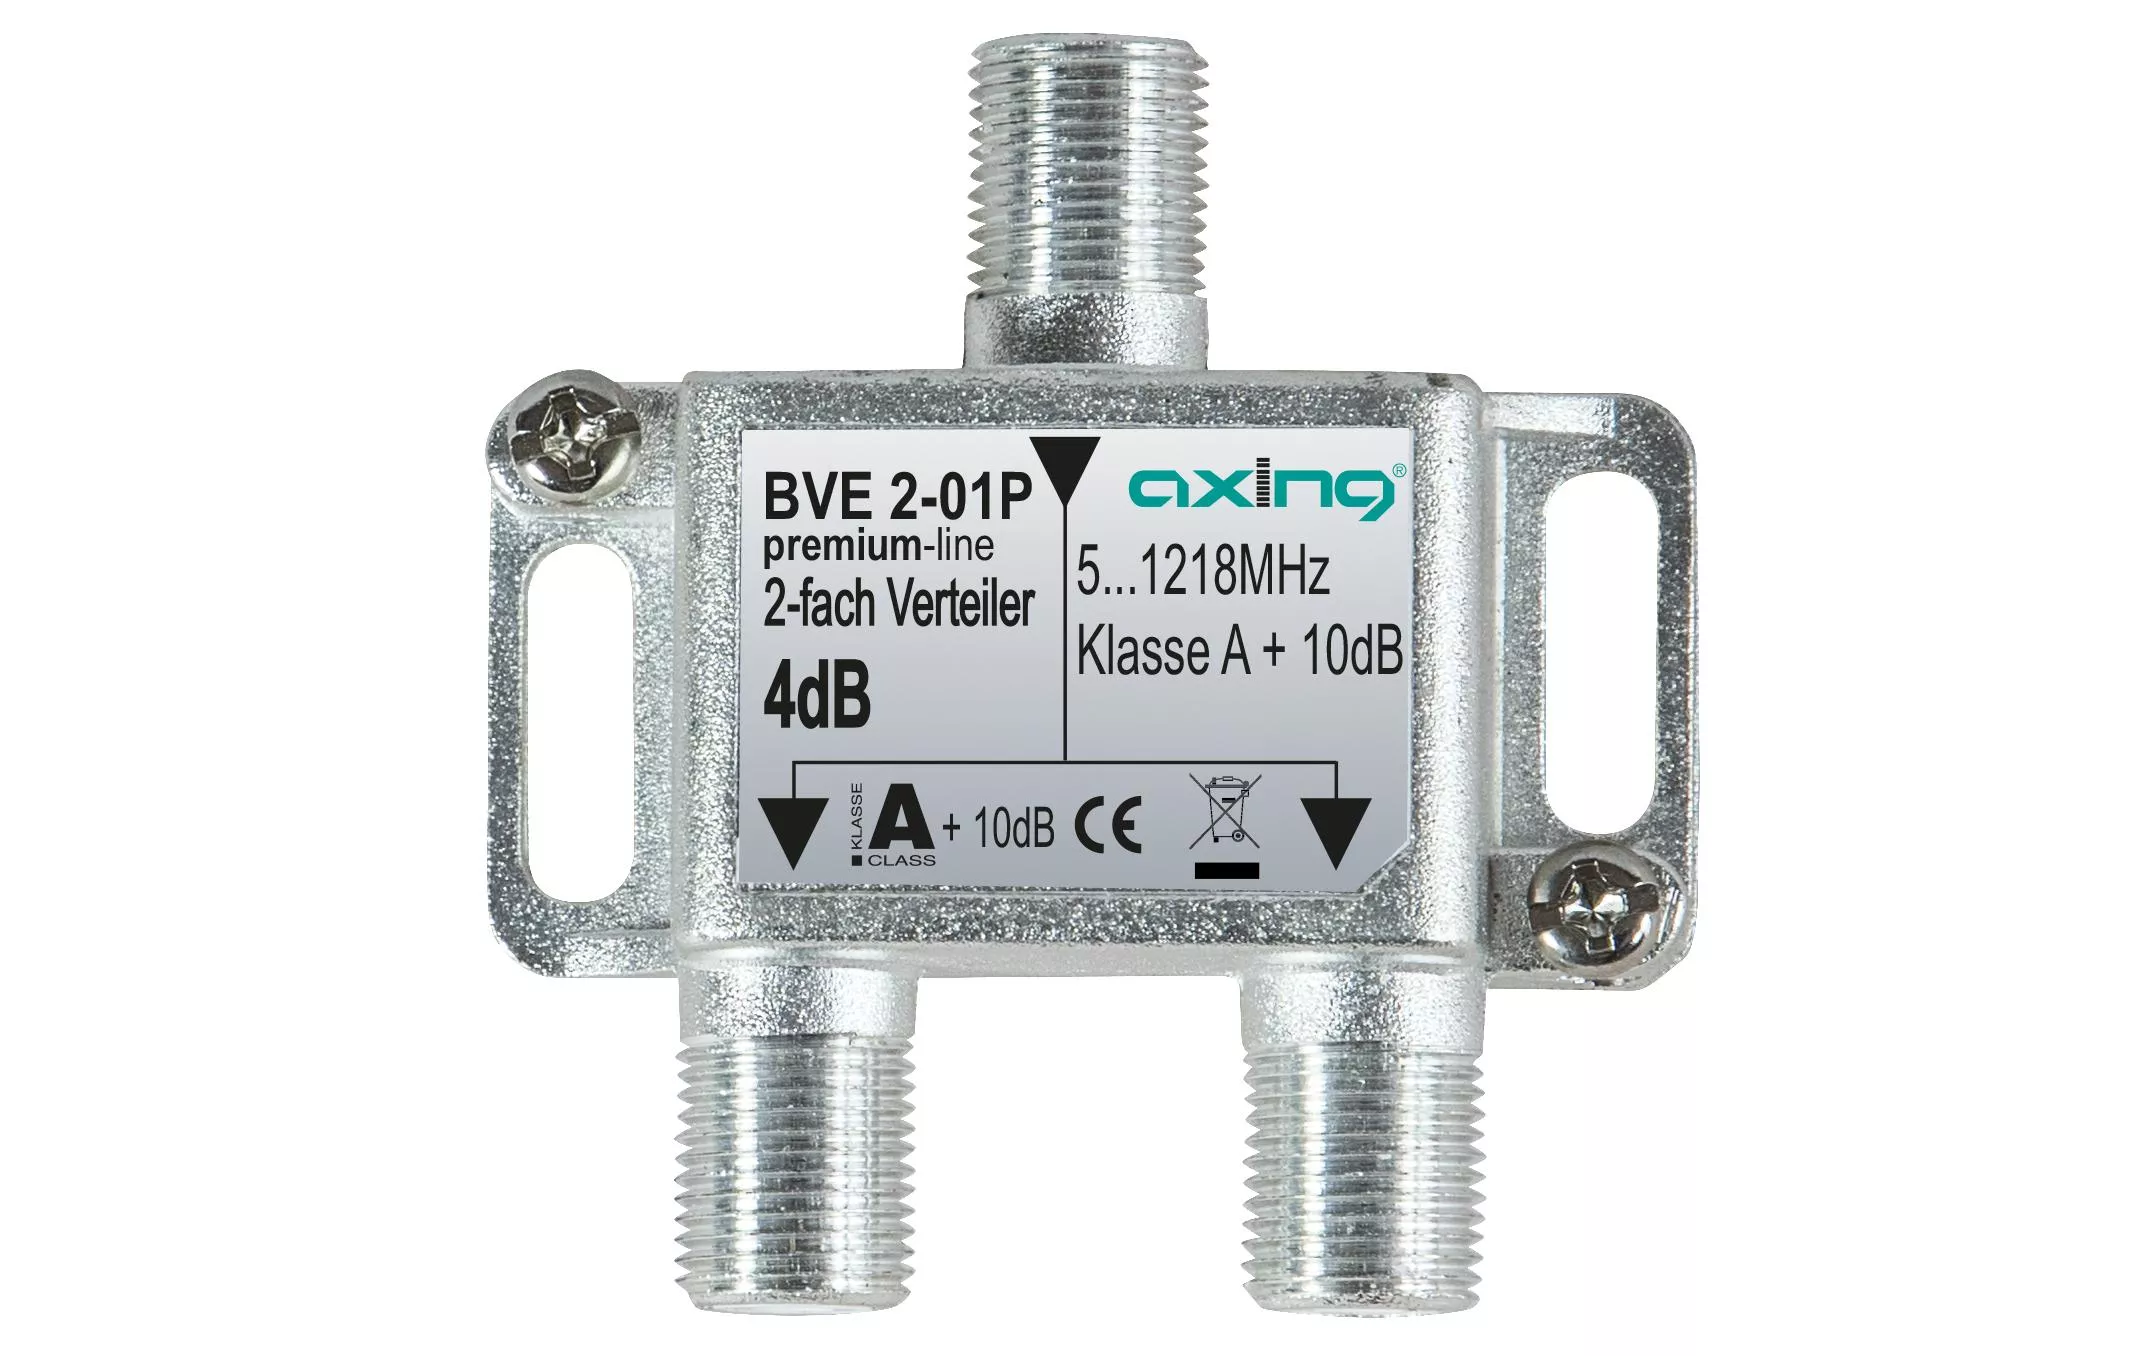 2-fach Verteiler BVE 2-01P 51218 MHz Bauform 01